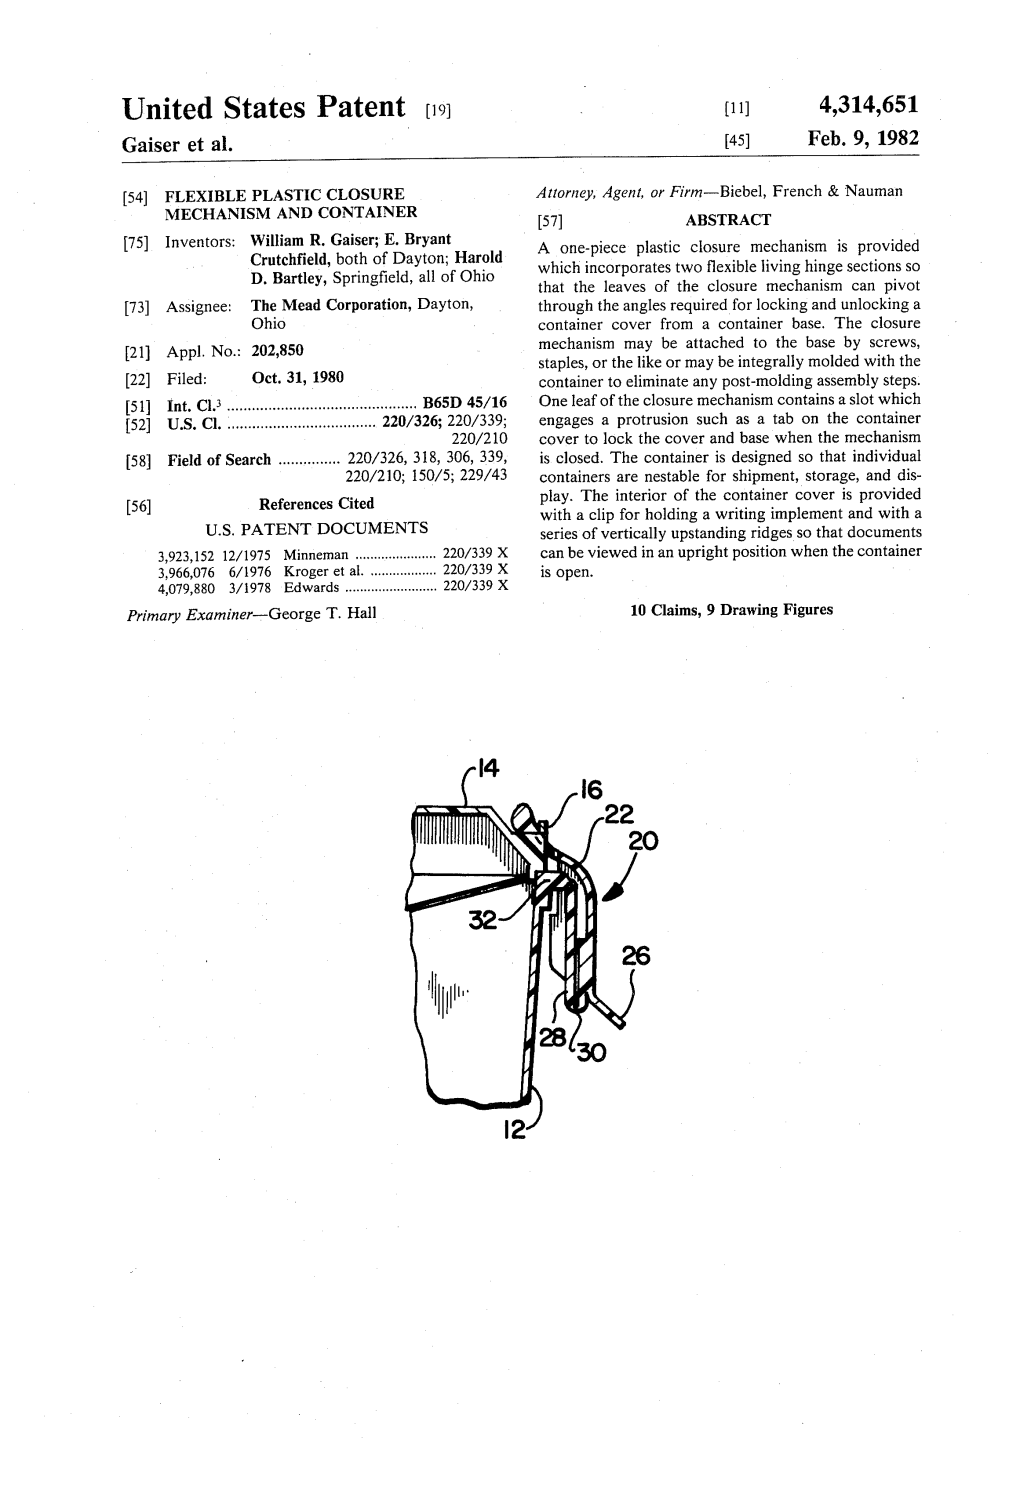 United States Patent 19 (11) 4,314,651 Gaiser Et Al